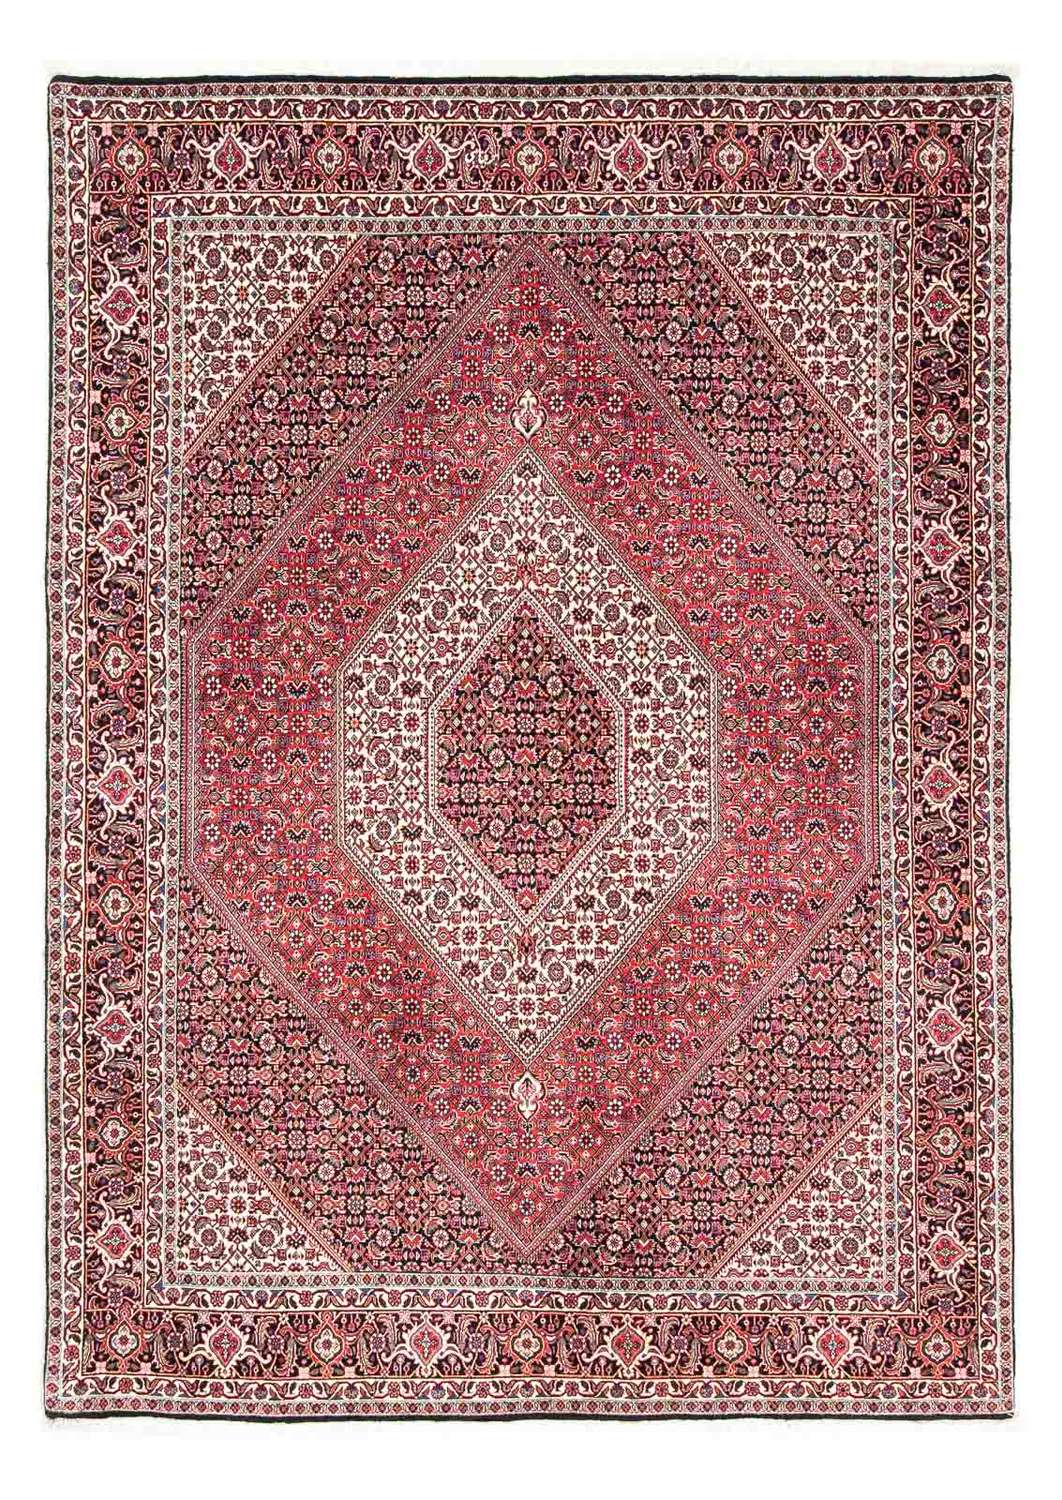 Tapis persan - Bidjar - 243 x 171 cm - rouge clair